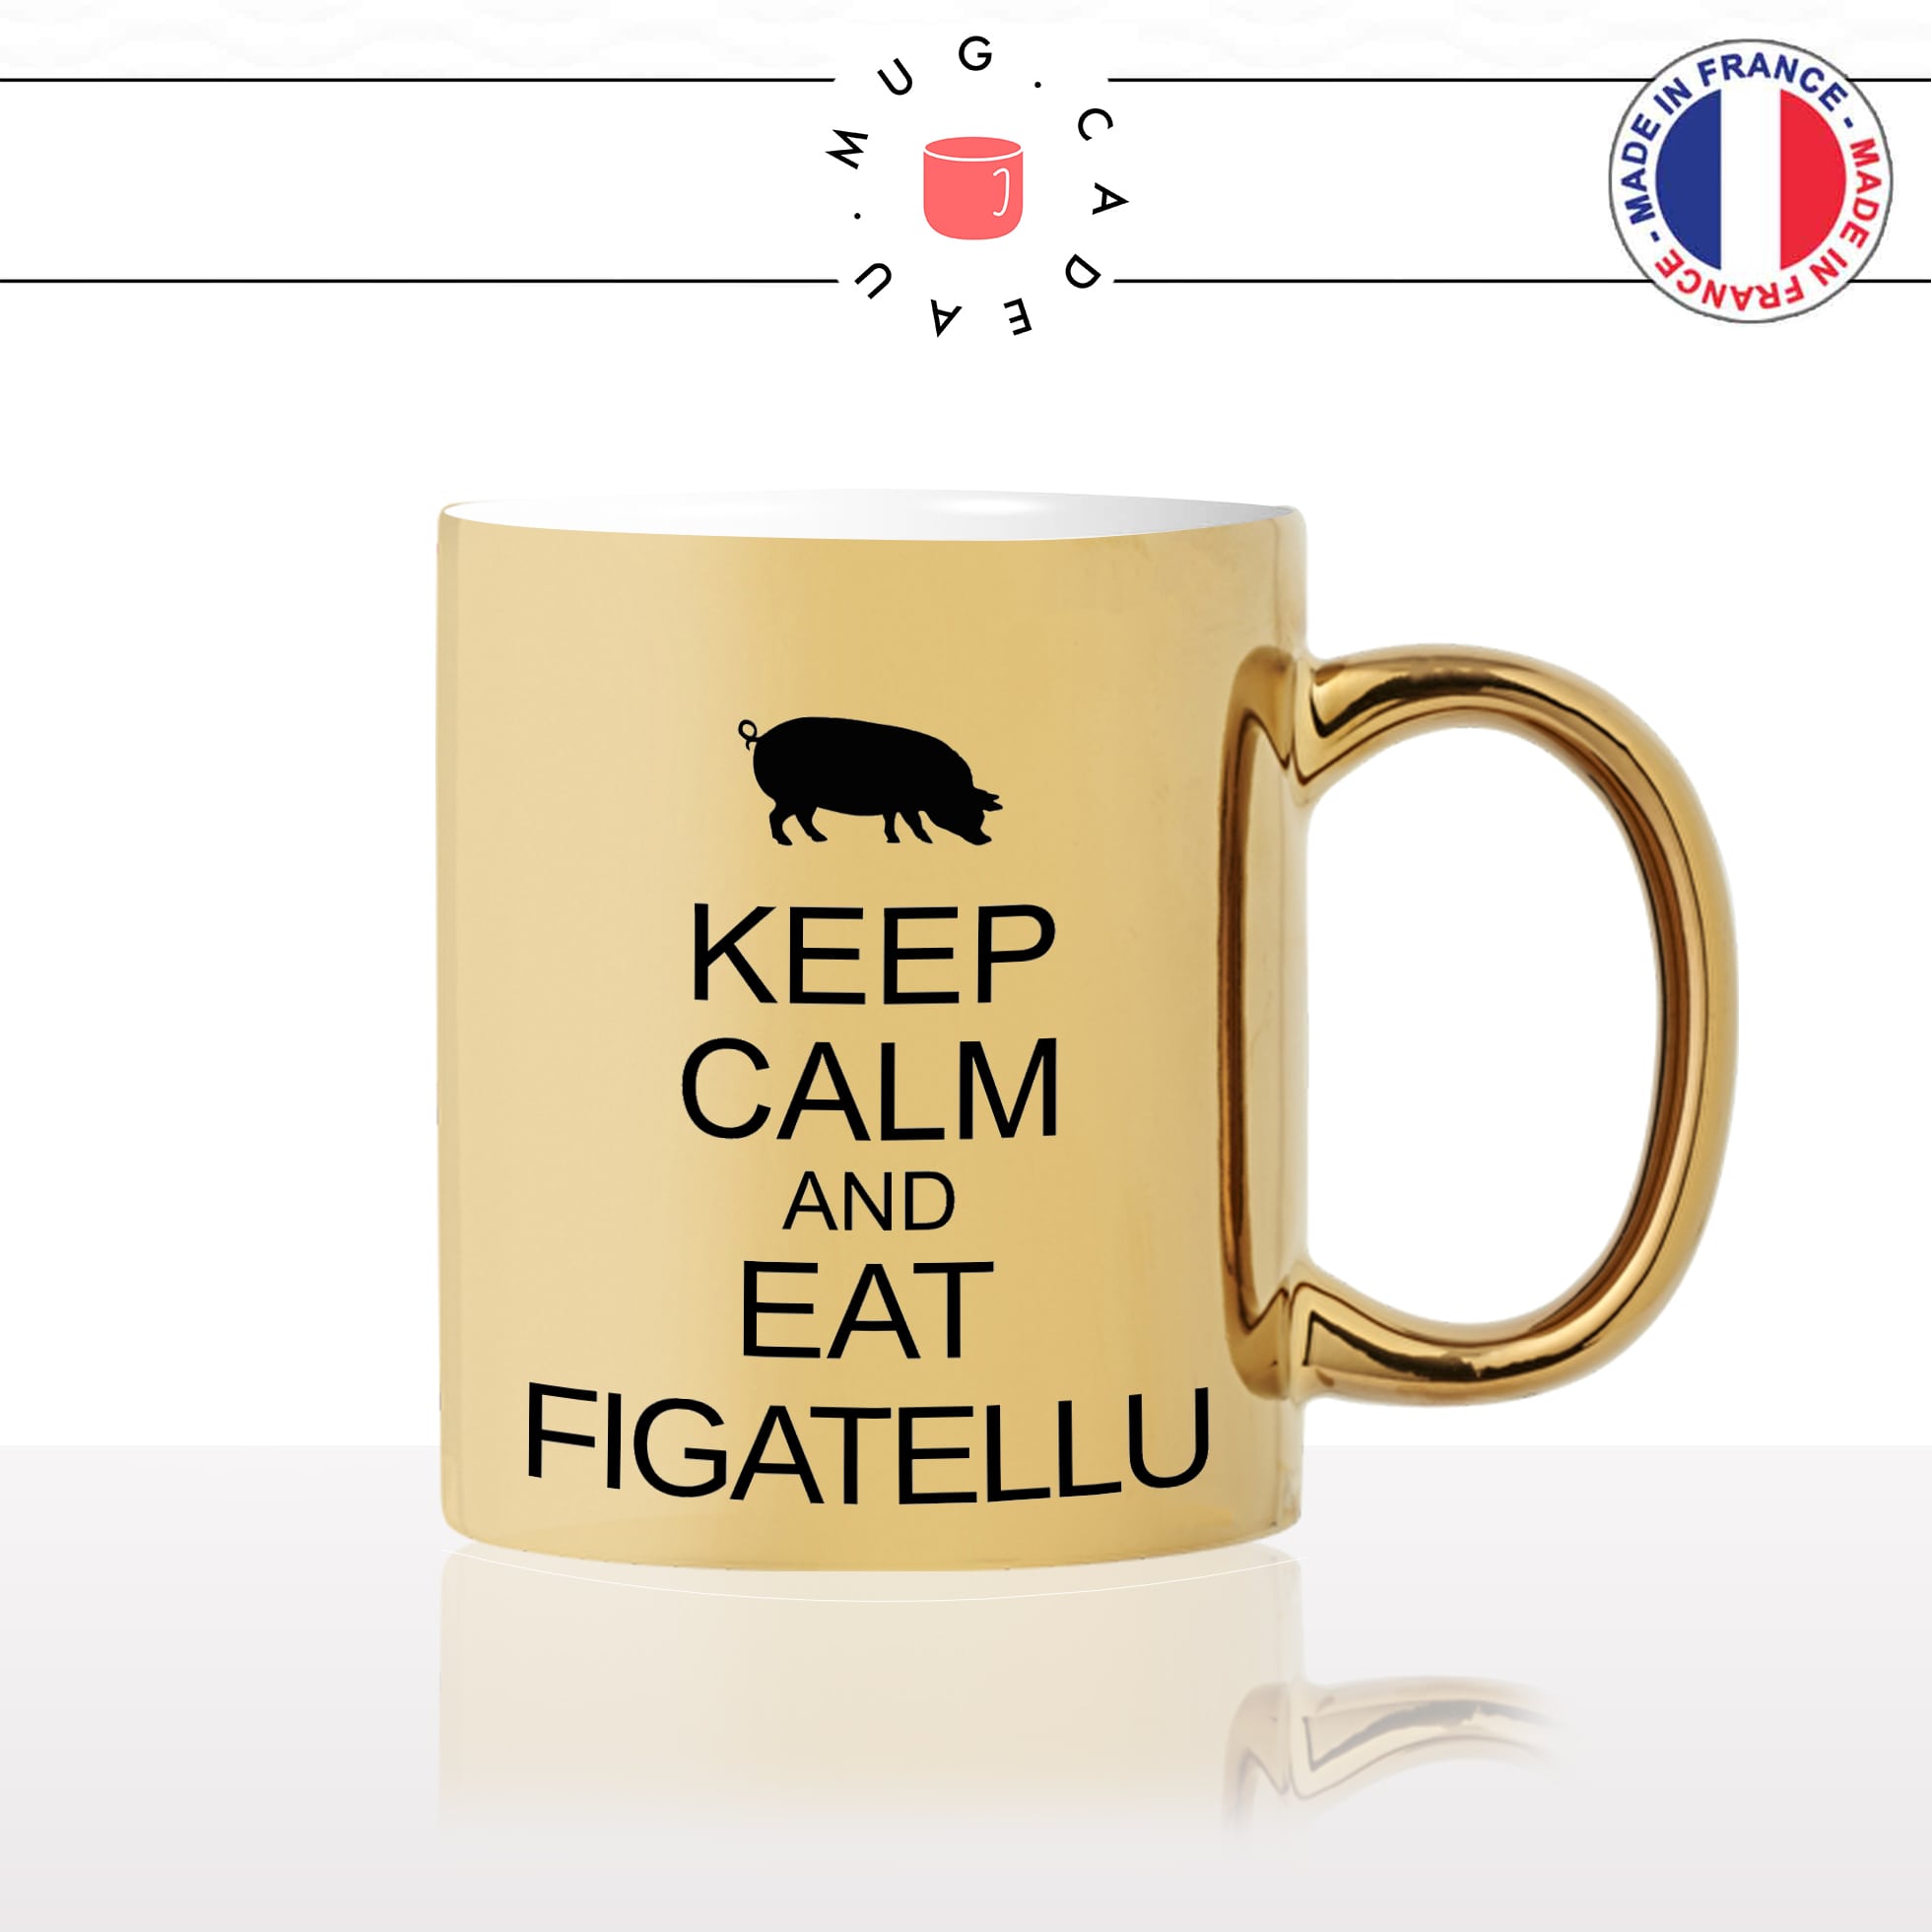 mug-tasse-or-gold-doré-keep-calm-eat-figatellu-charcuterie-corse-corsica-cochon-noir-vacance-cool-fun-idée-cadeau-originale-personnalisé-café-thé2-min